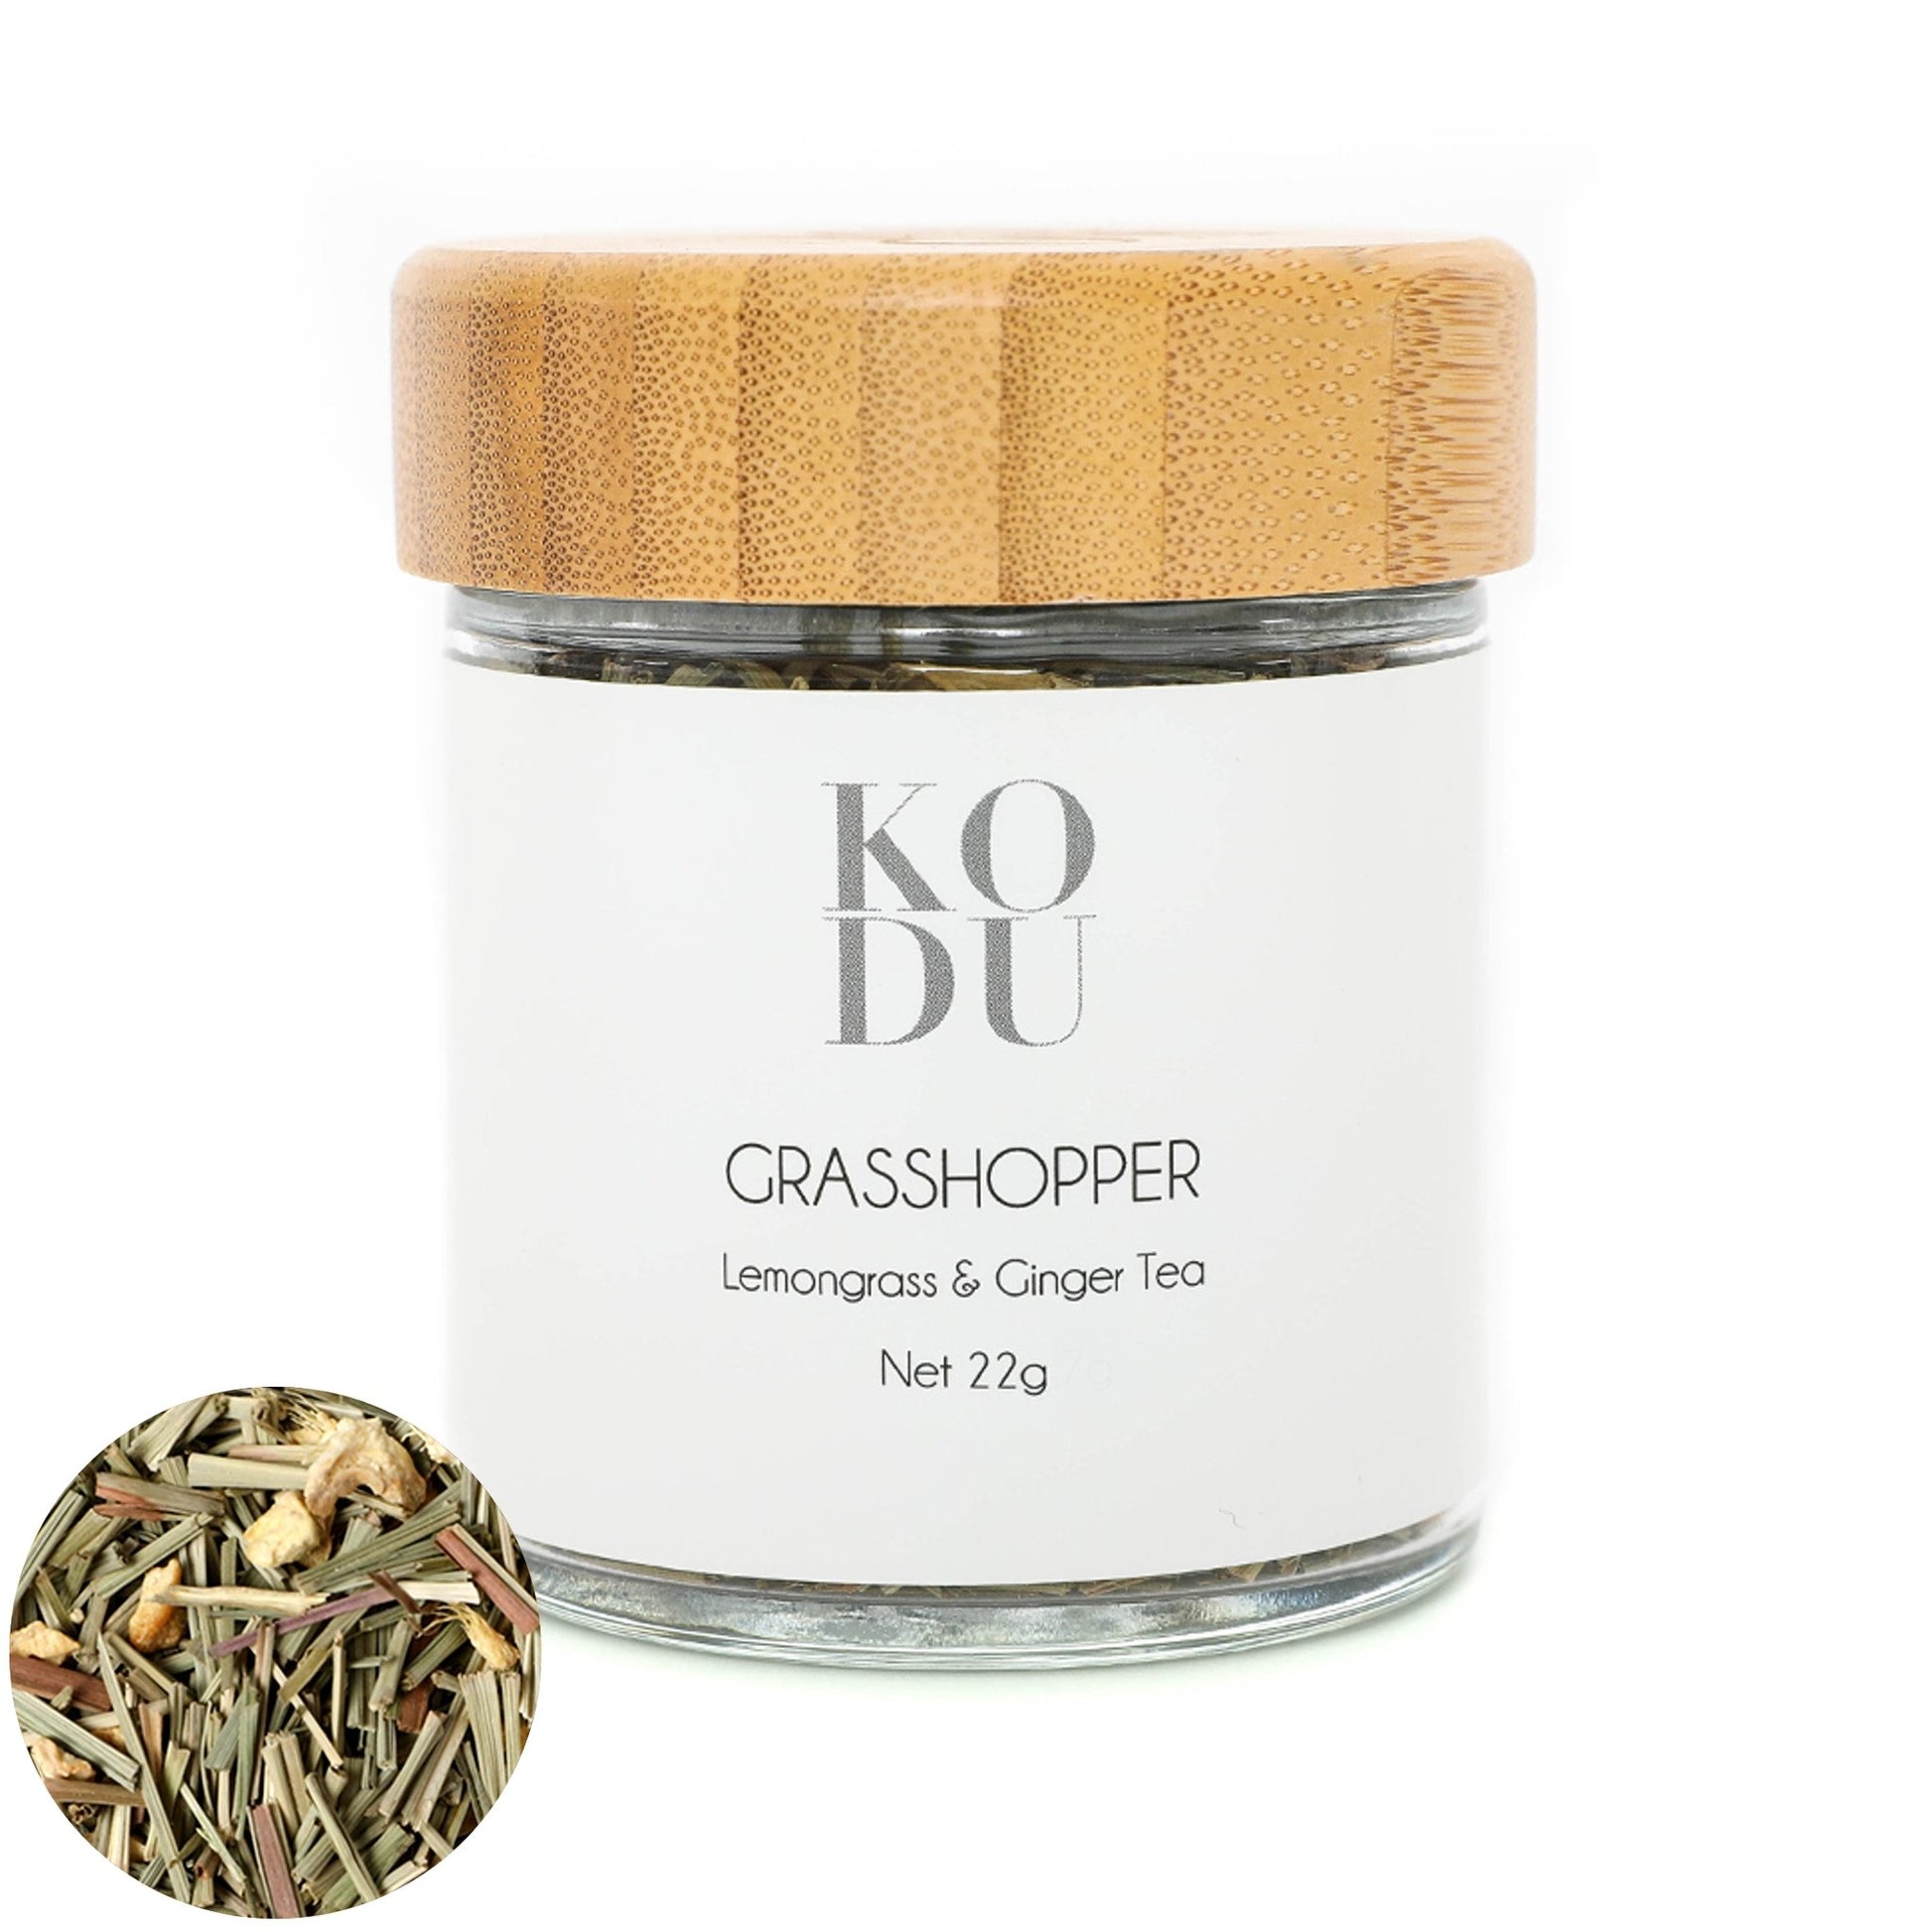 Grasshopper - Loose Leaf Tea Infusion - Lemongrass & Ginger Tea - mykodu